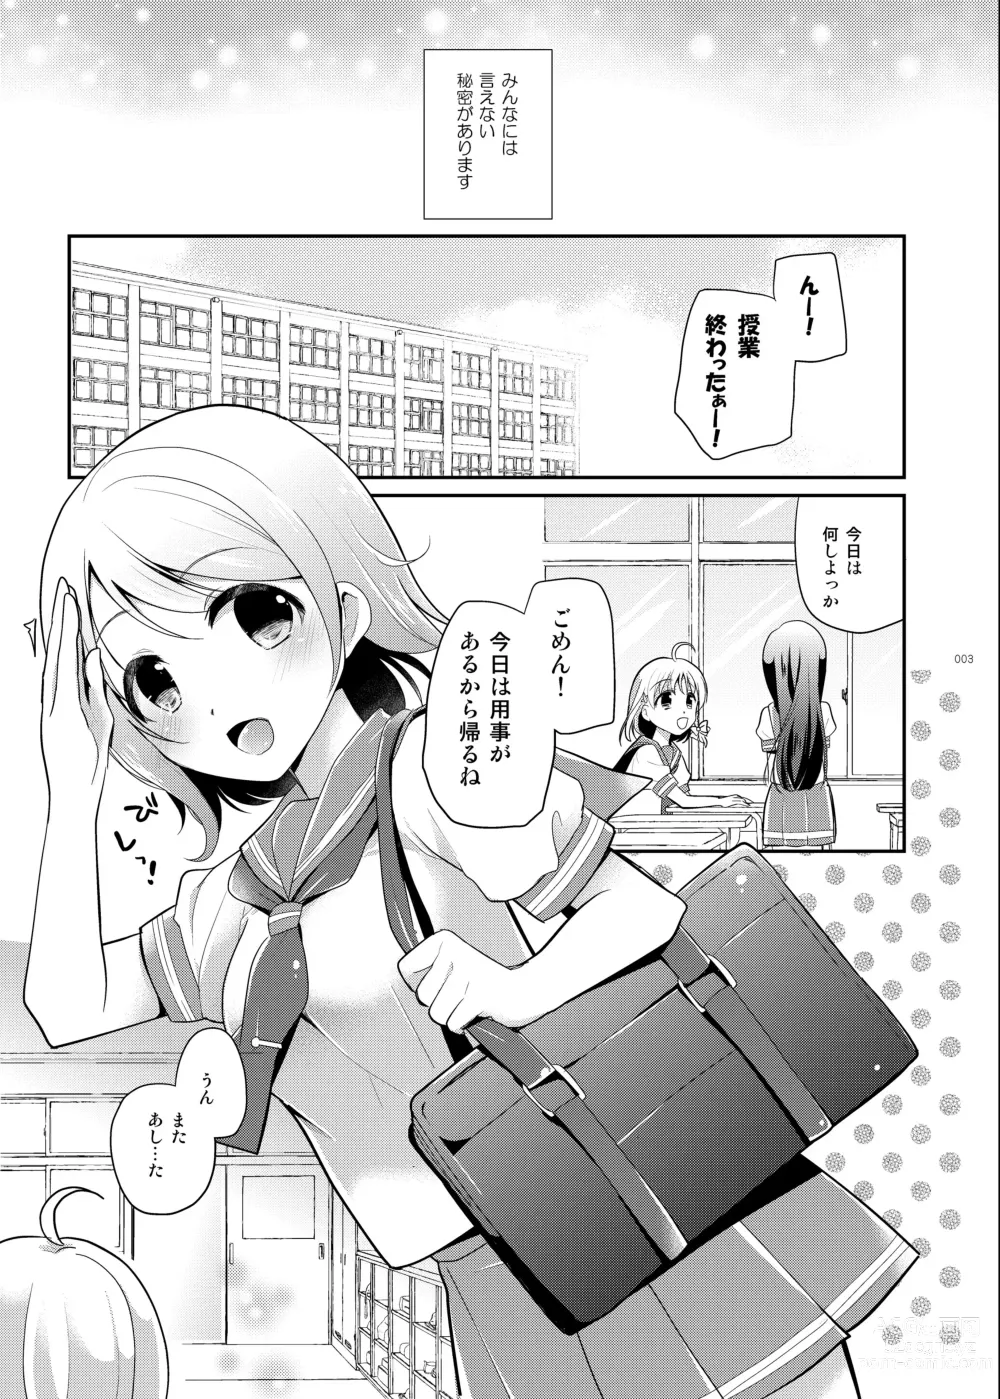 Page 2 of doujinshi You-chan no Himitsu